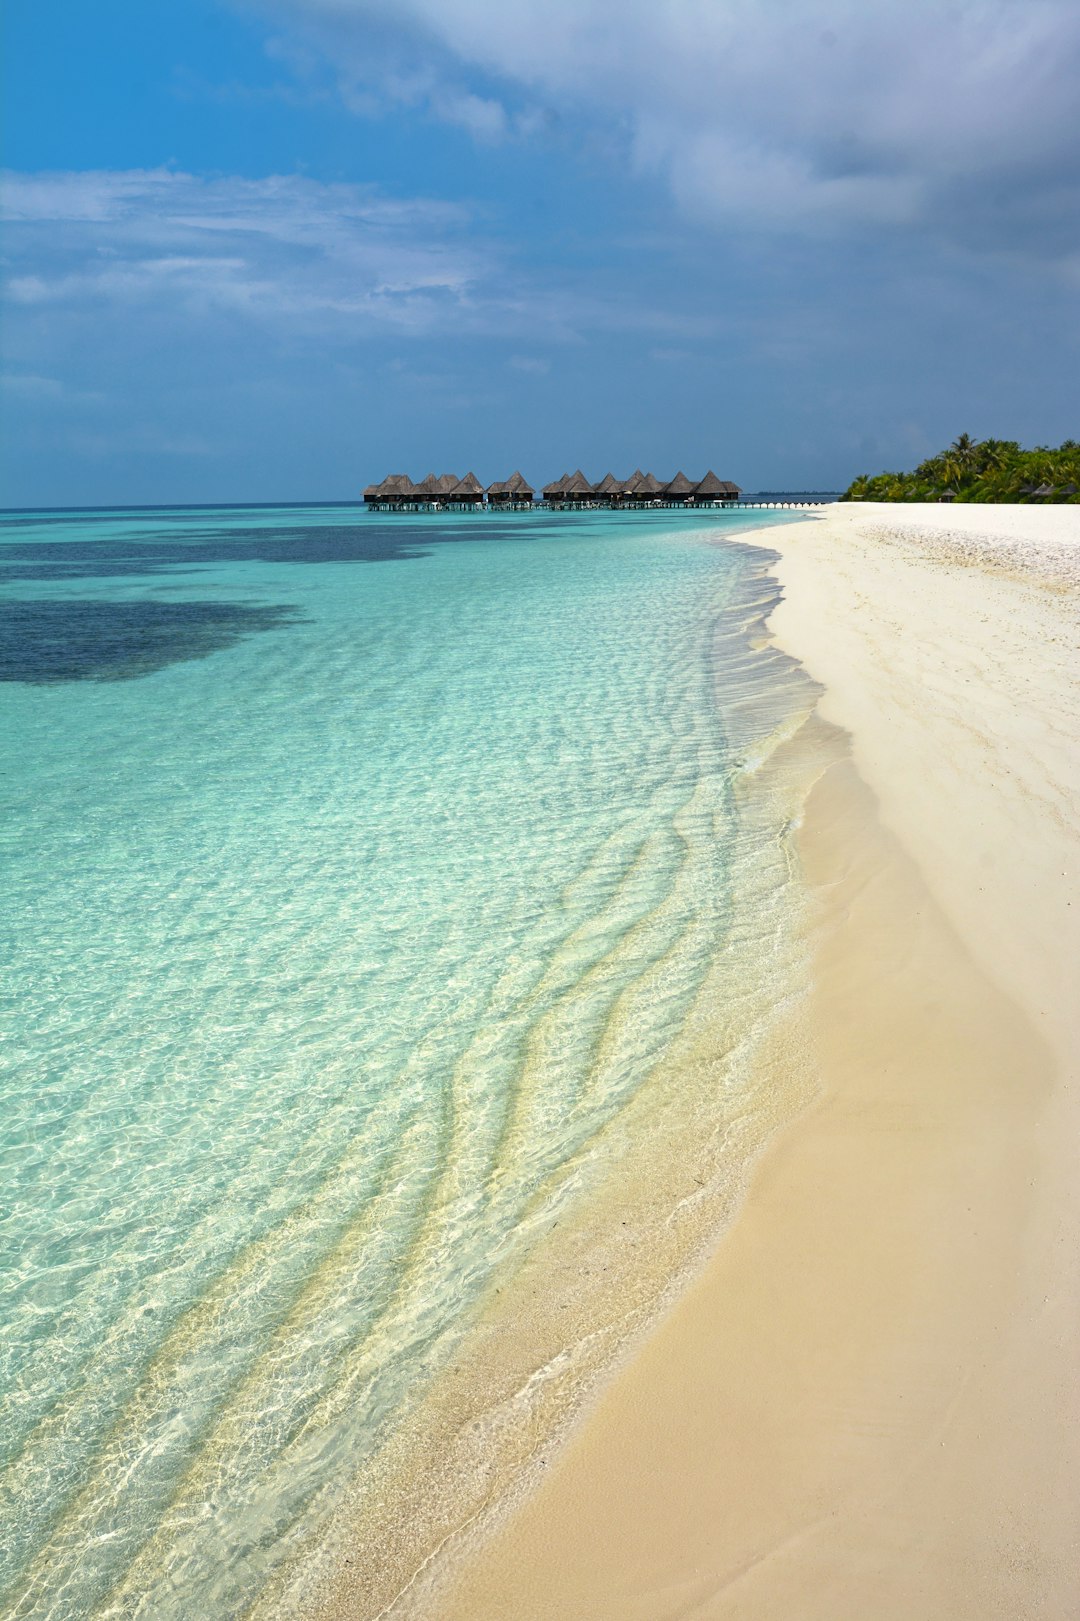 Beach photo spot Coco Palm Dhuni Kolhu Baa Atoll